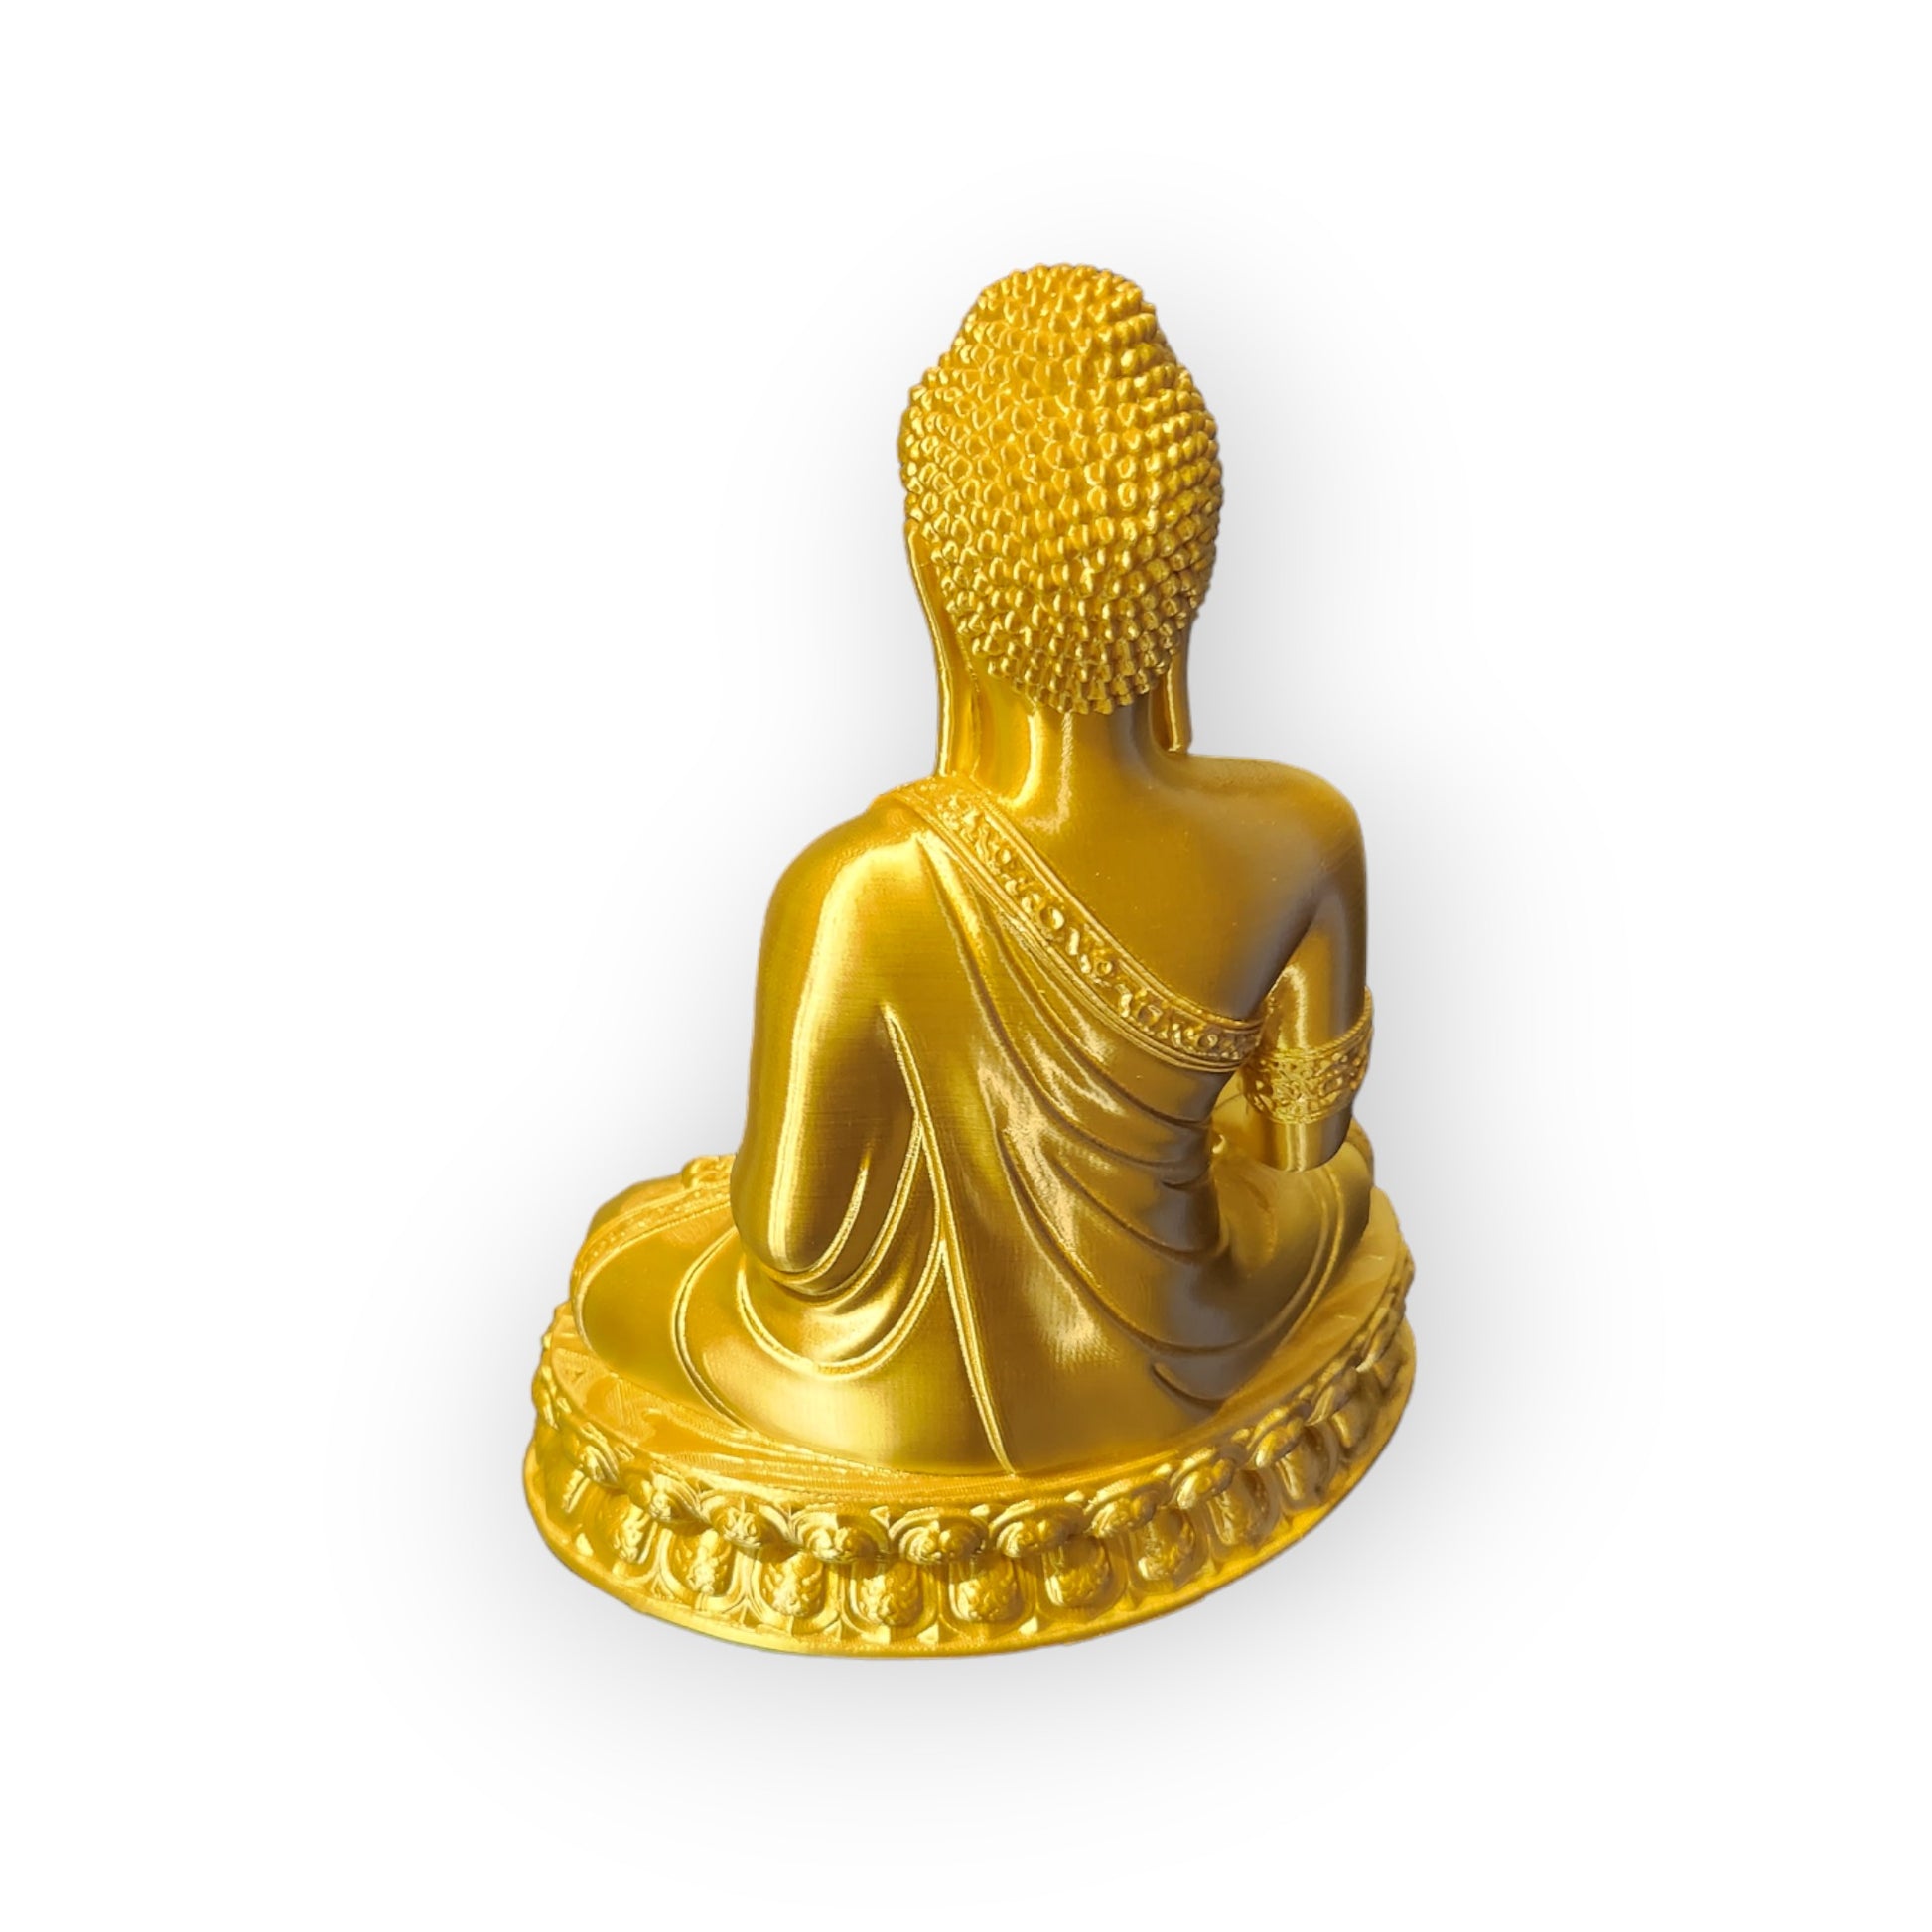 3D Printed Buddha Figurine Earth bhumisparsha mudra 10" Tall